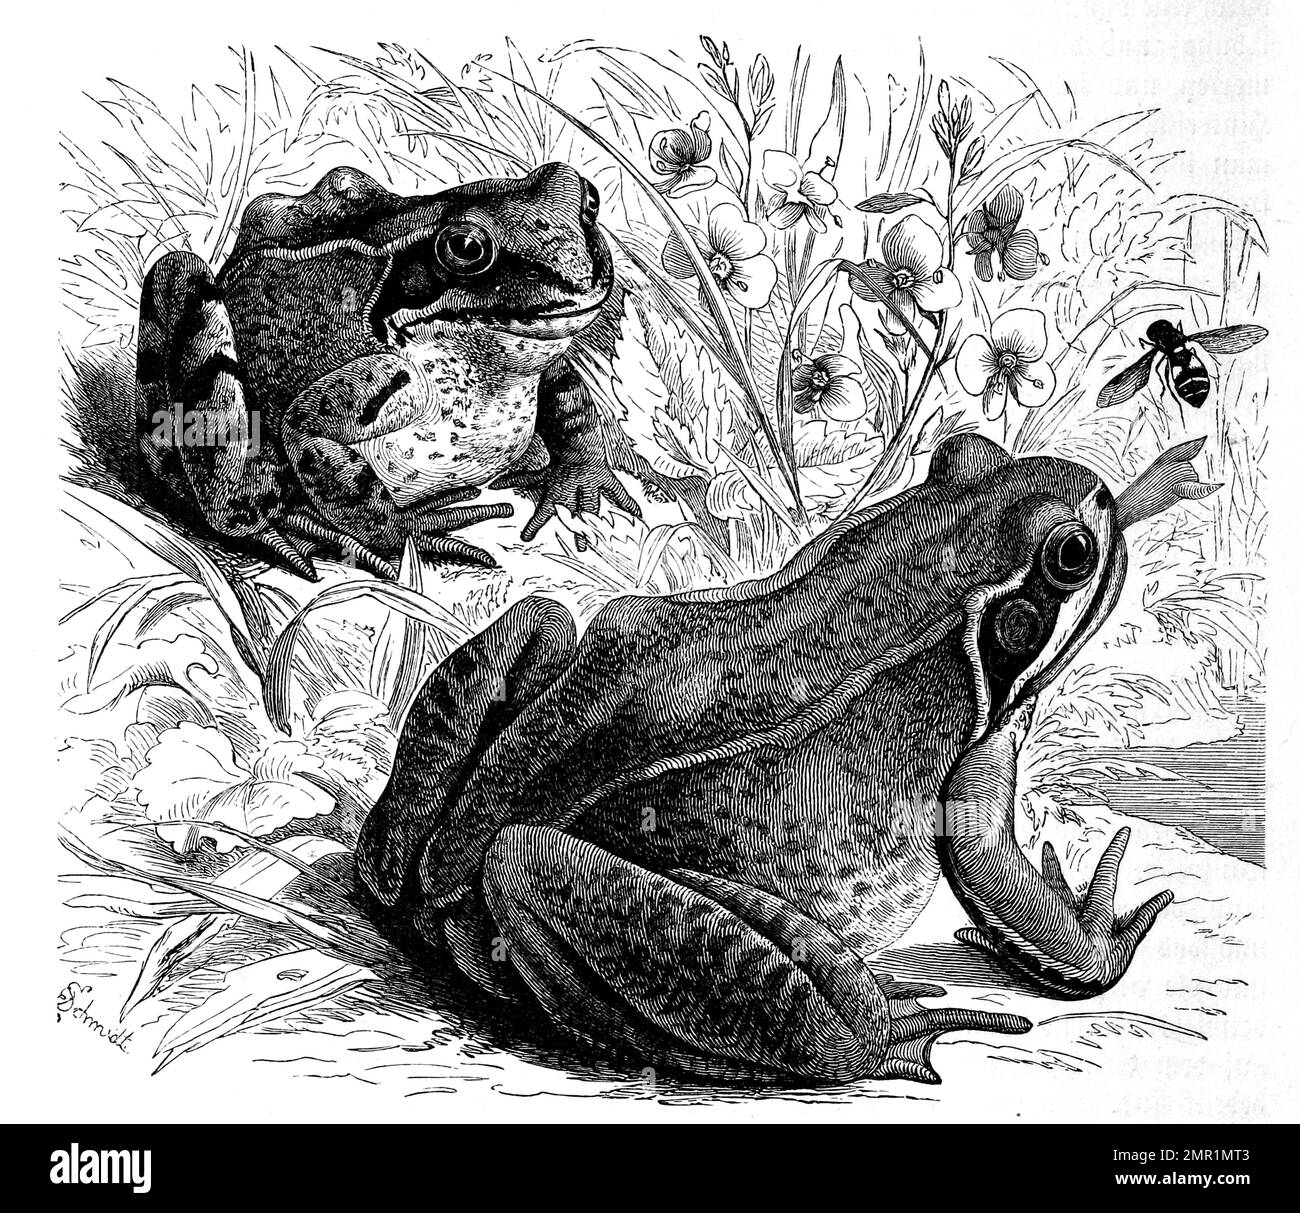 Reptilien, Grasfrosch, Rana temporaria gehört zur Gattung der Echten Frösche in der Familie der Echten Frösche, Historisch, digital restaurierte Reproduktion von einer Vorlage aus dem 19. Jahrhundert Stock Photo